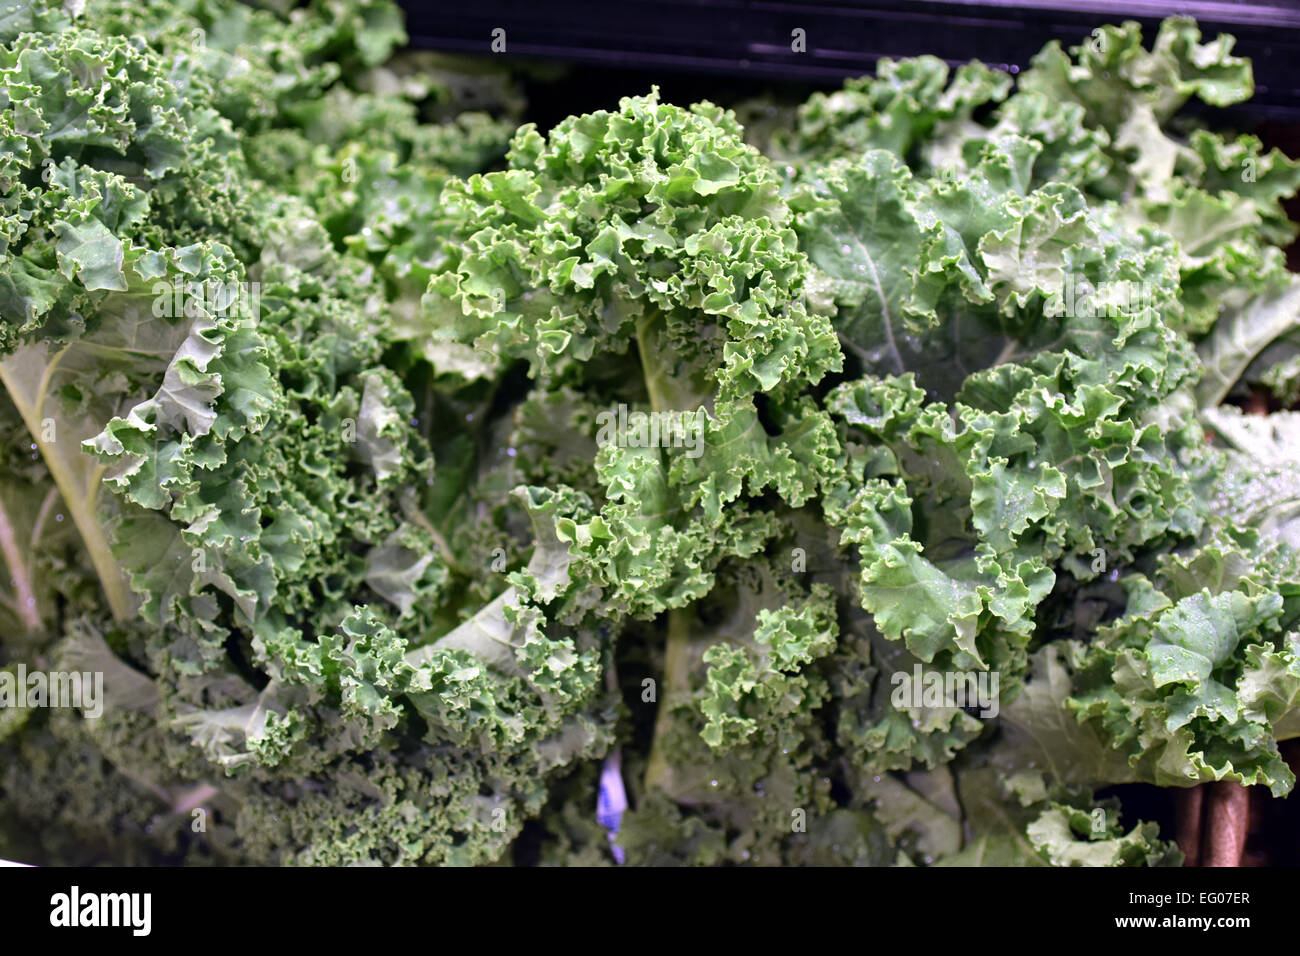 Kale splendide, de légumes, ont été sélectionnés pour être photographiés Banque D'Images